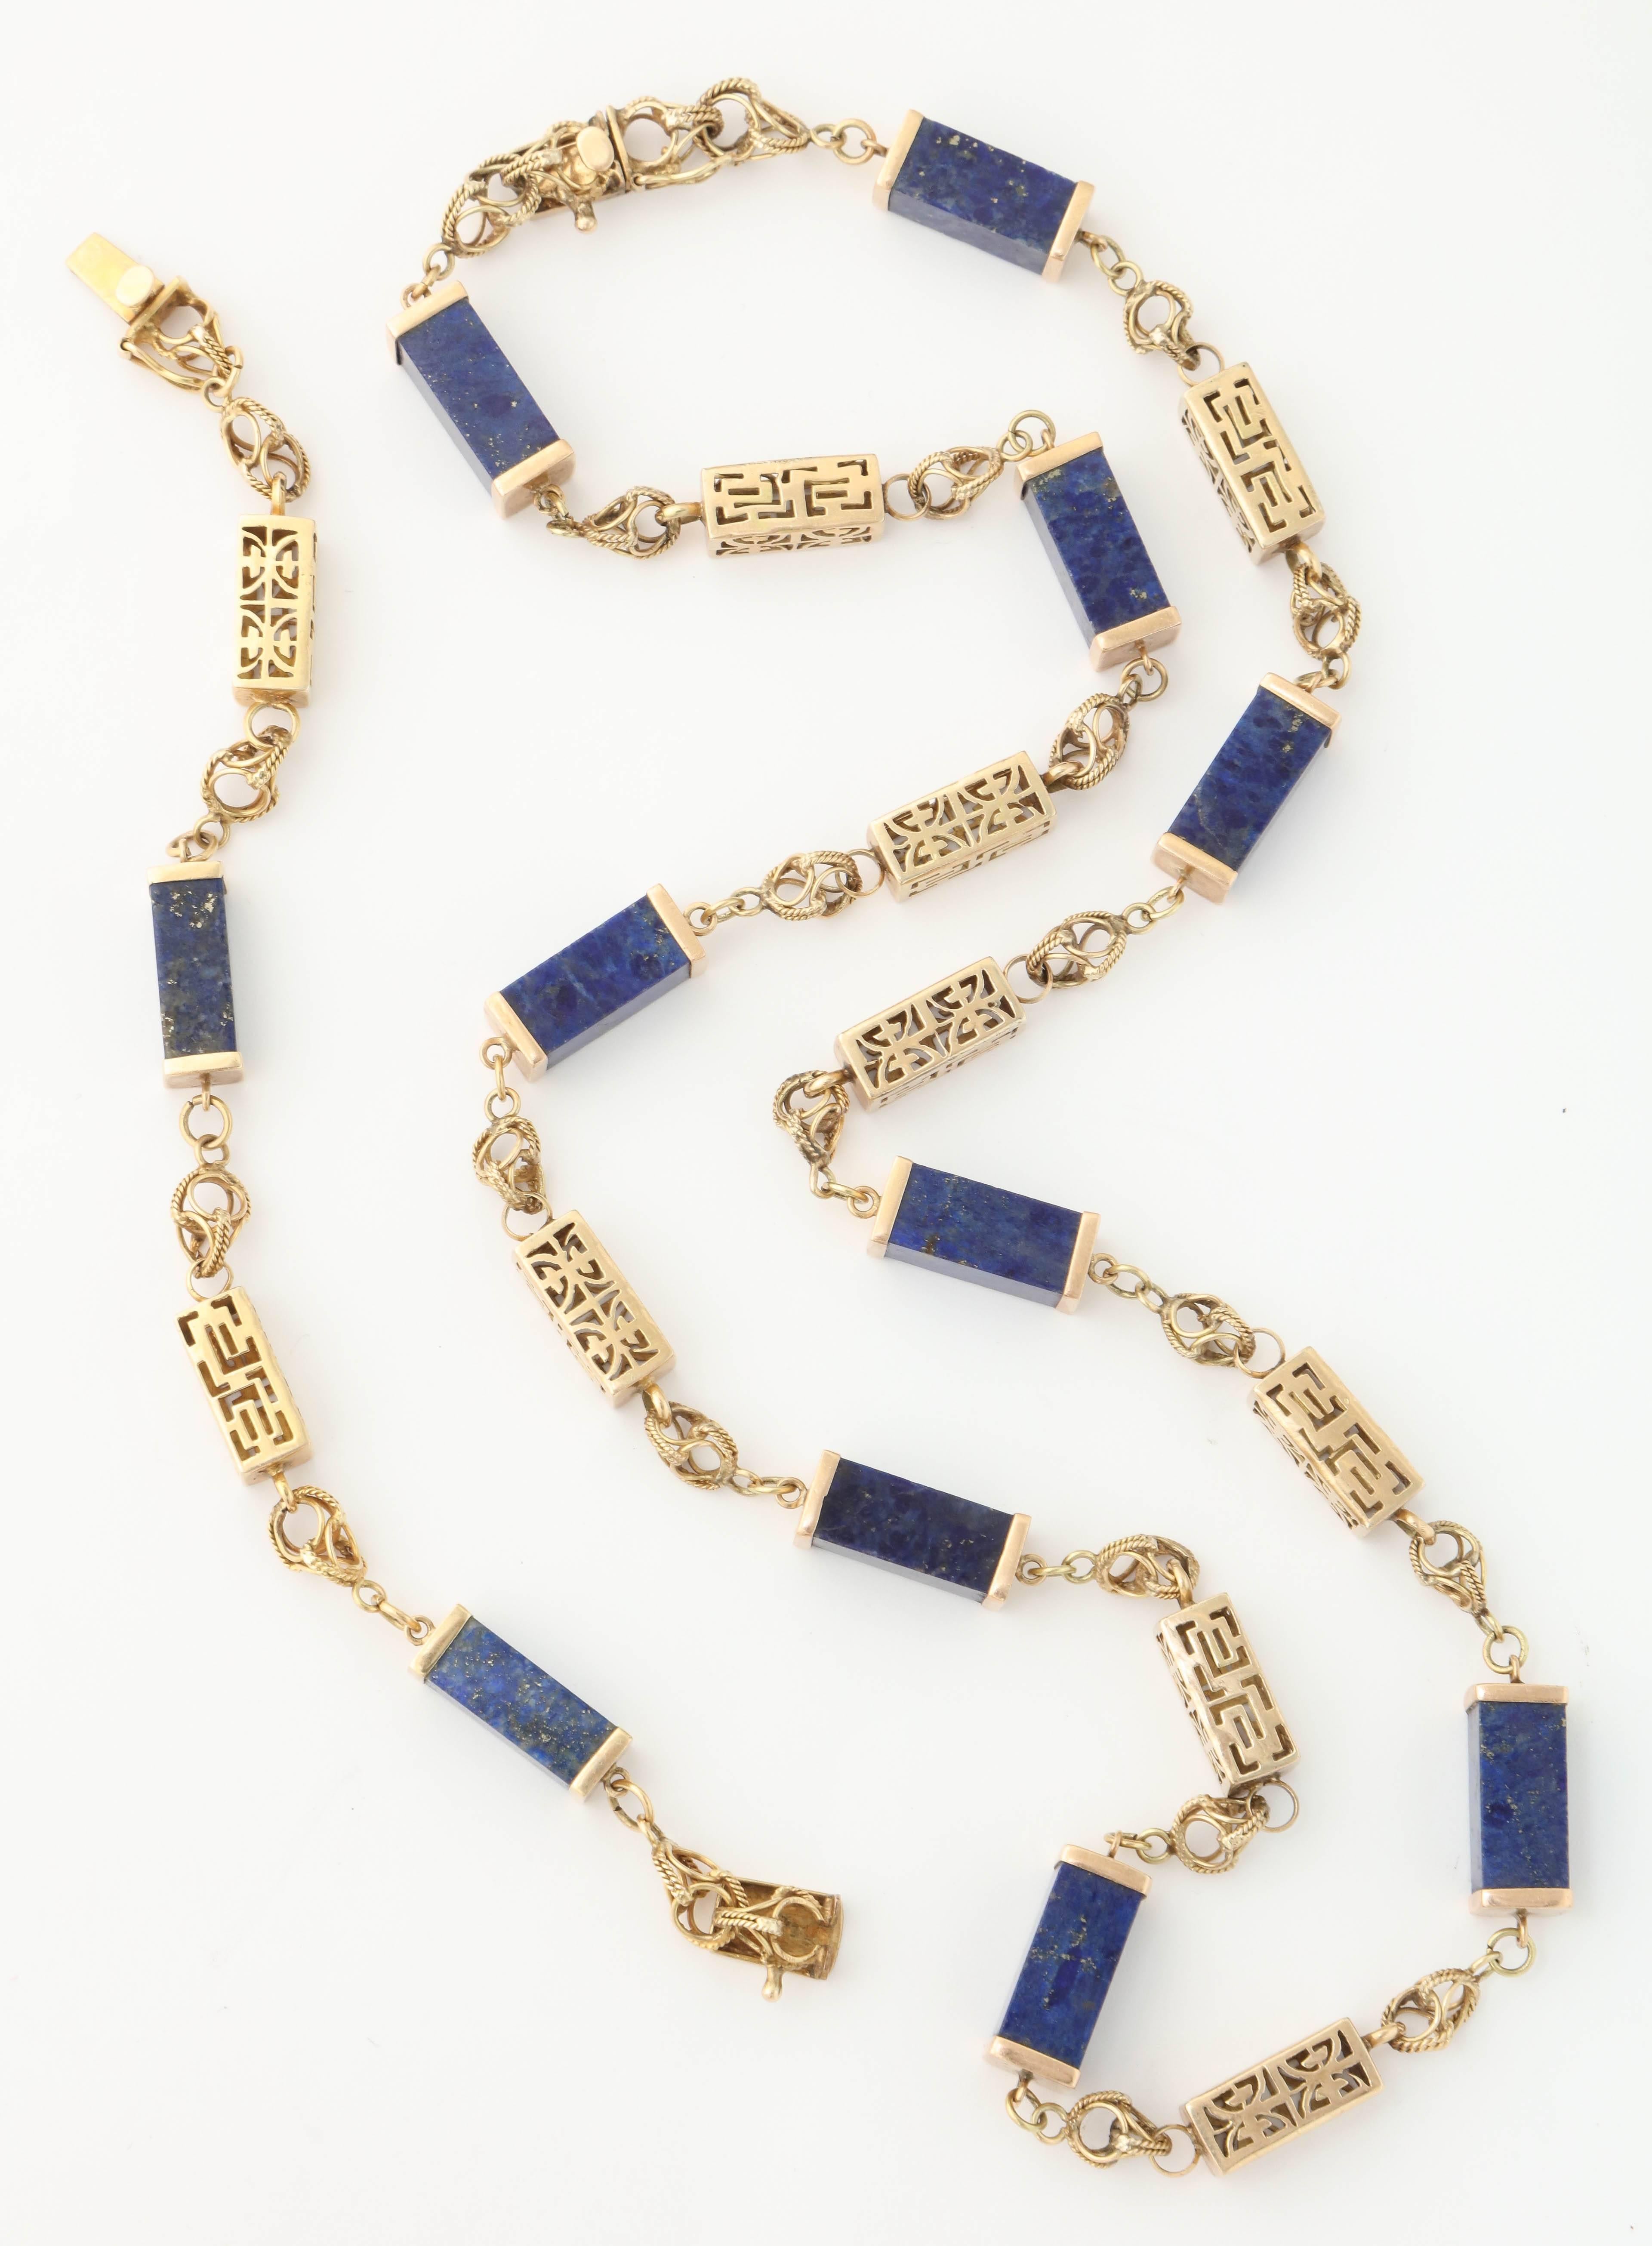 1950s Lapis Lazuli Gold Necklace Bracelet Long Chain Combination  4